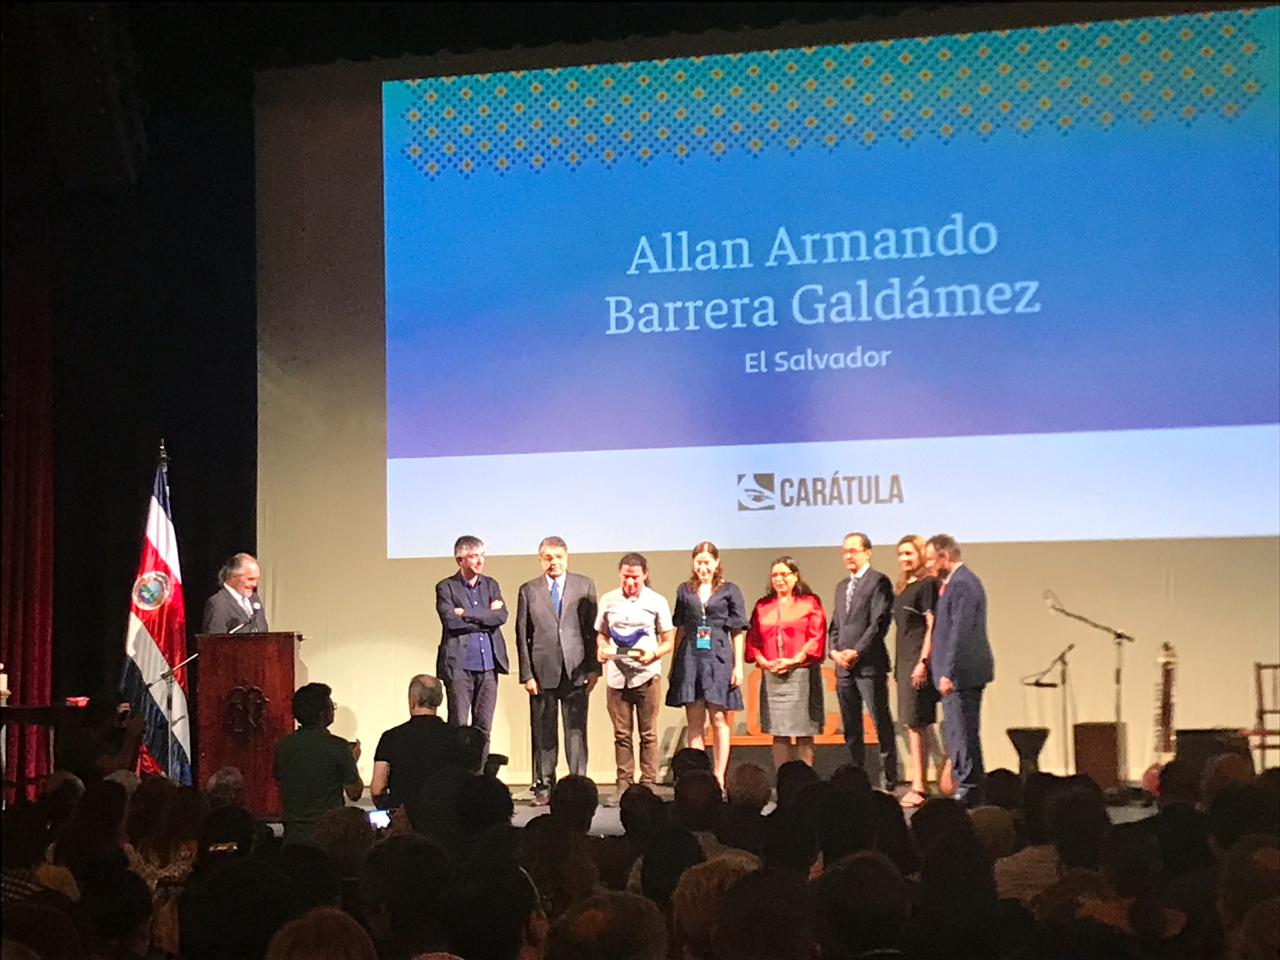 El Salvador gana el VII Certamen de Cuento Breve “Carátula” 2019